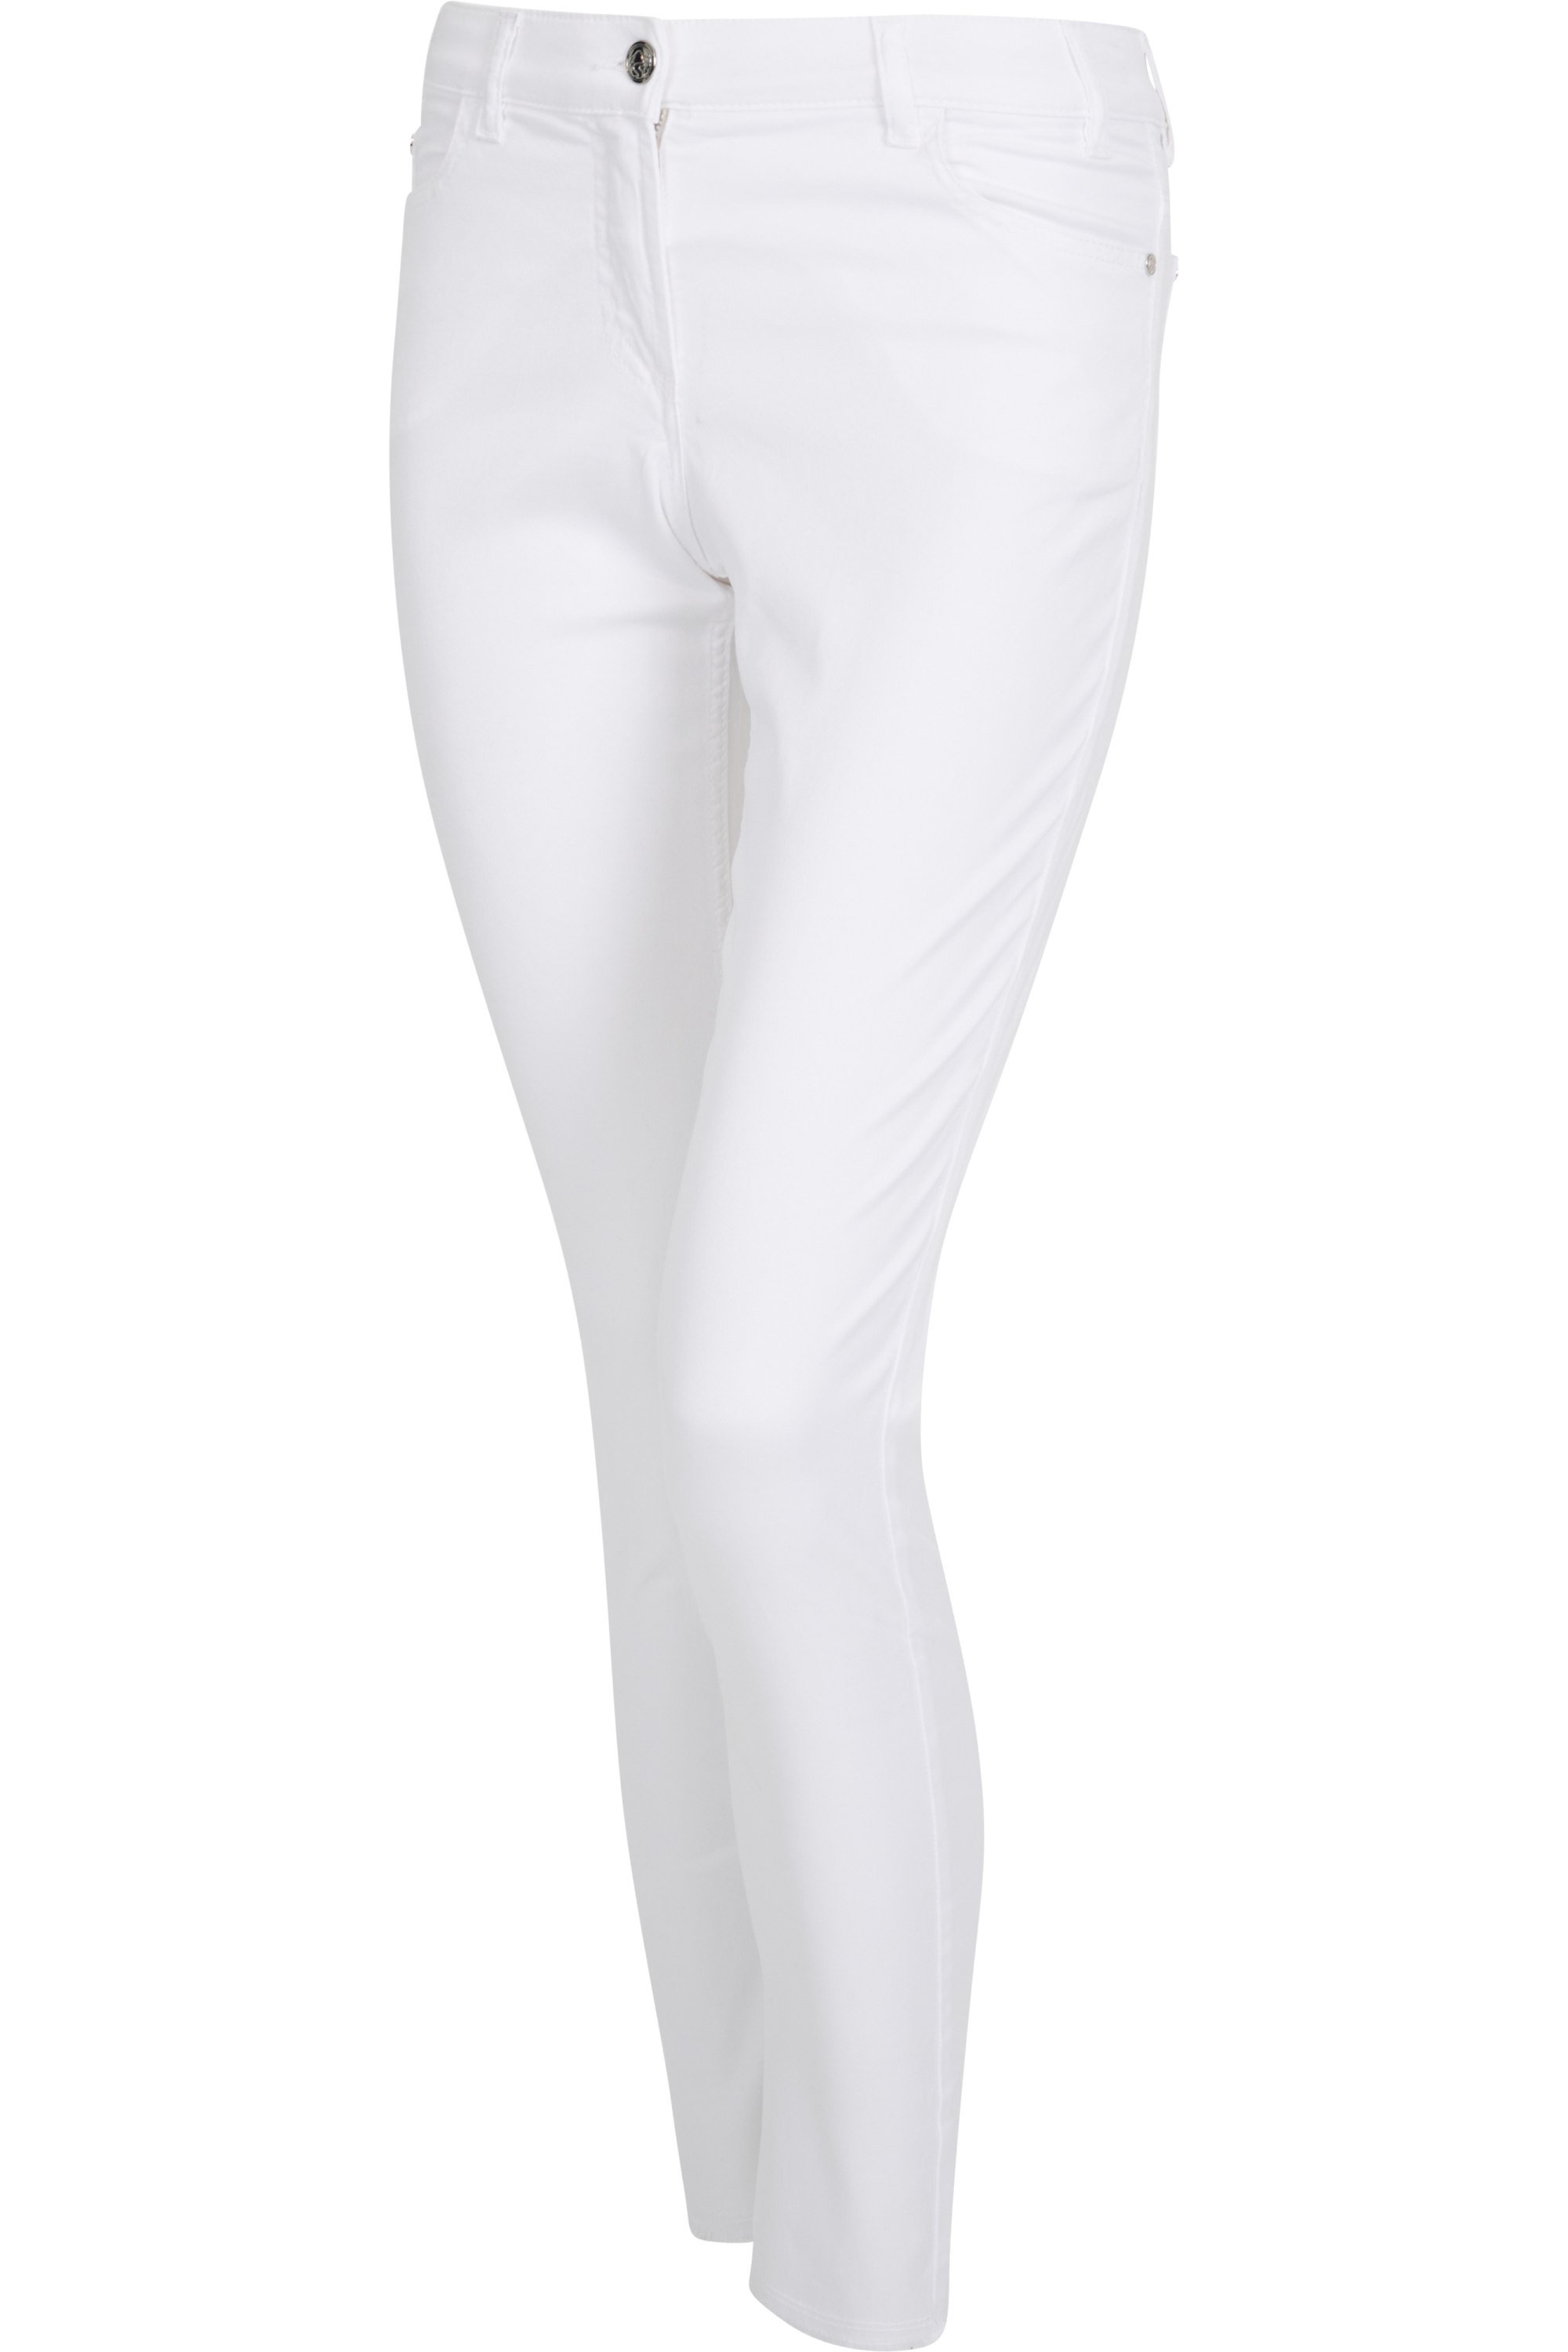 Sportalm kalhoty Enna bright white Velikost: 38